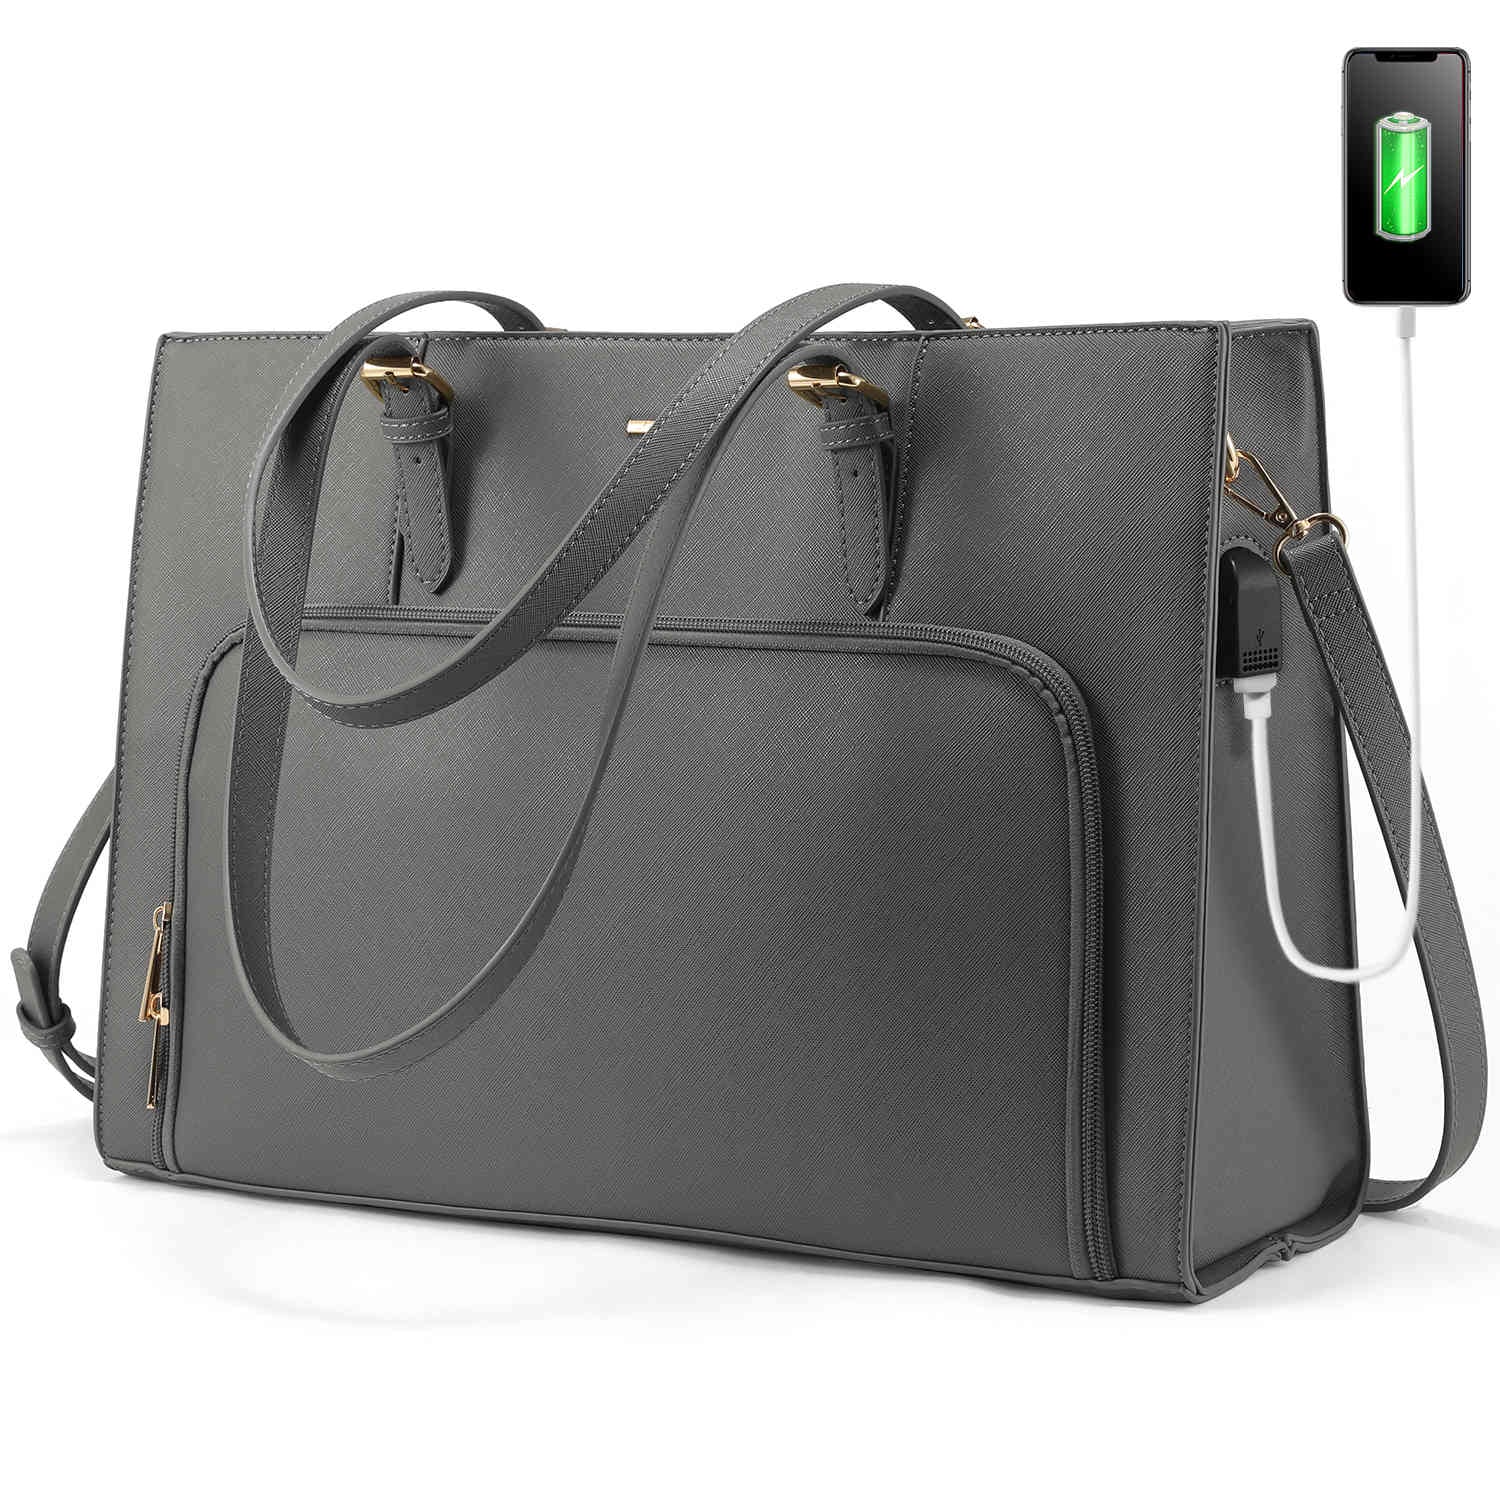 Buy Cream Laptop Bags for Women by VAN HEUSEN Online | Ajio.com